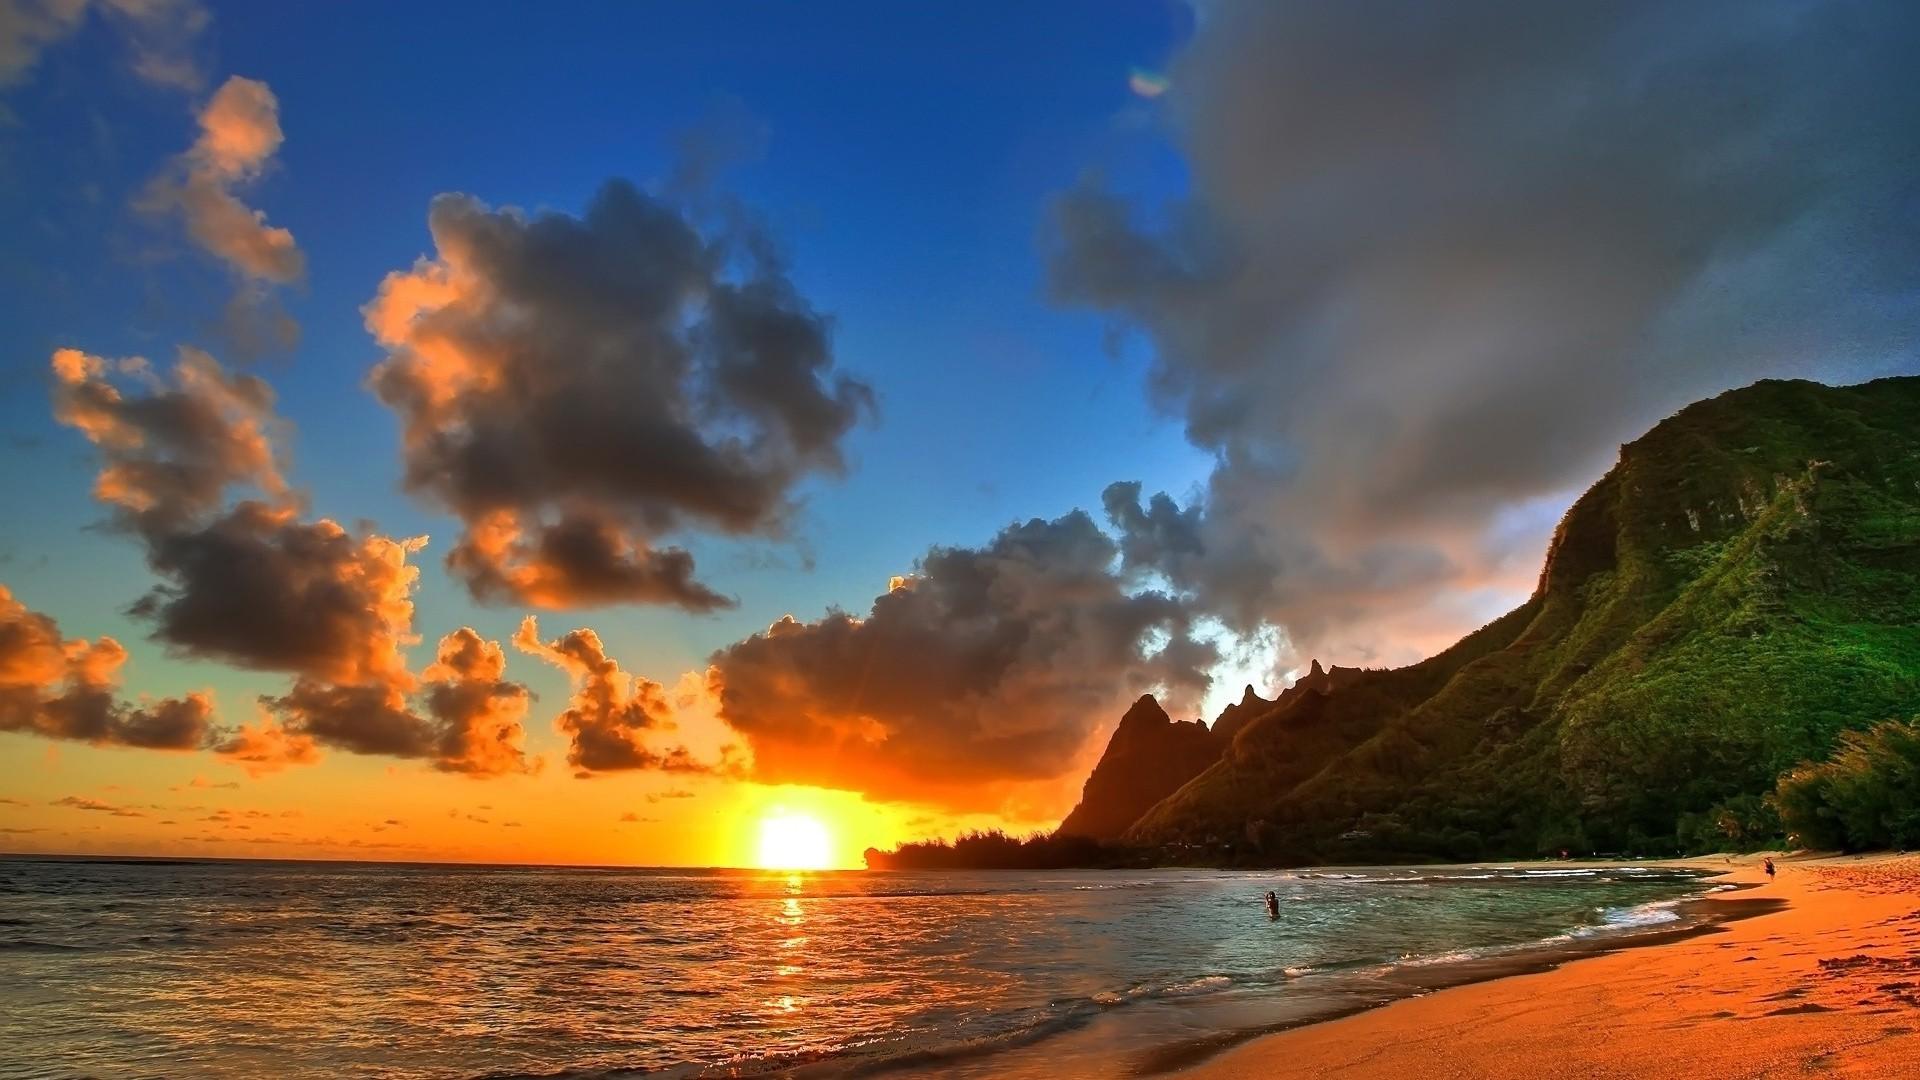 Beach Sunset HD Desktop Wallpaper > Flip Wallpaper > Download Free